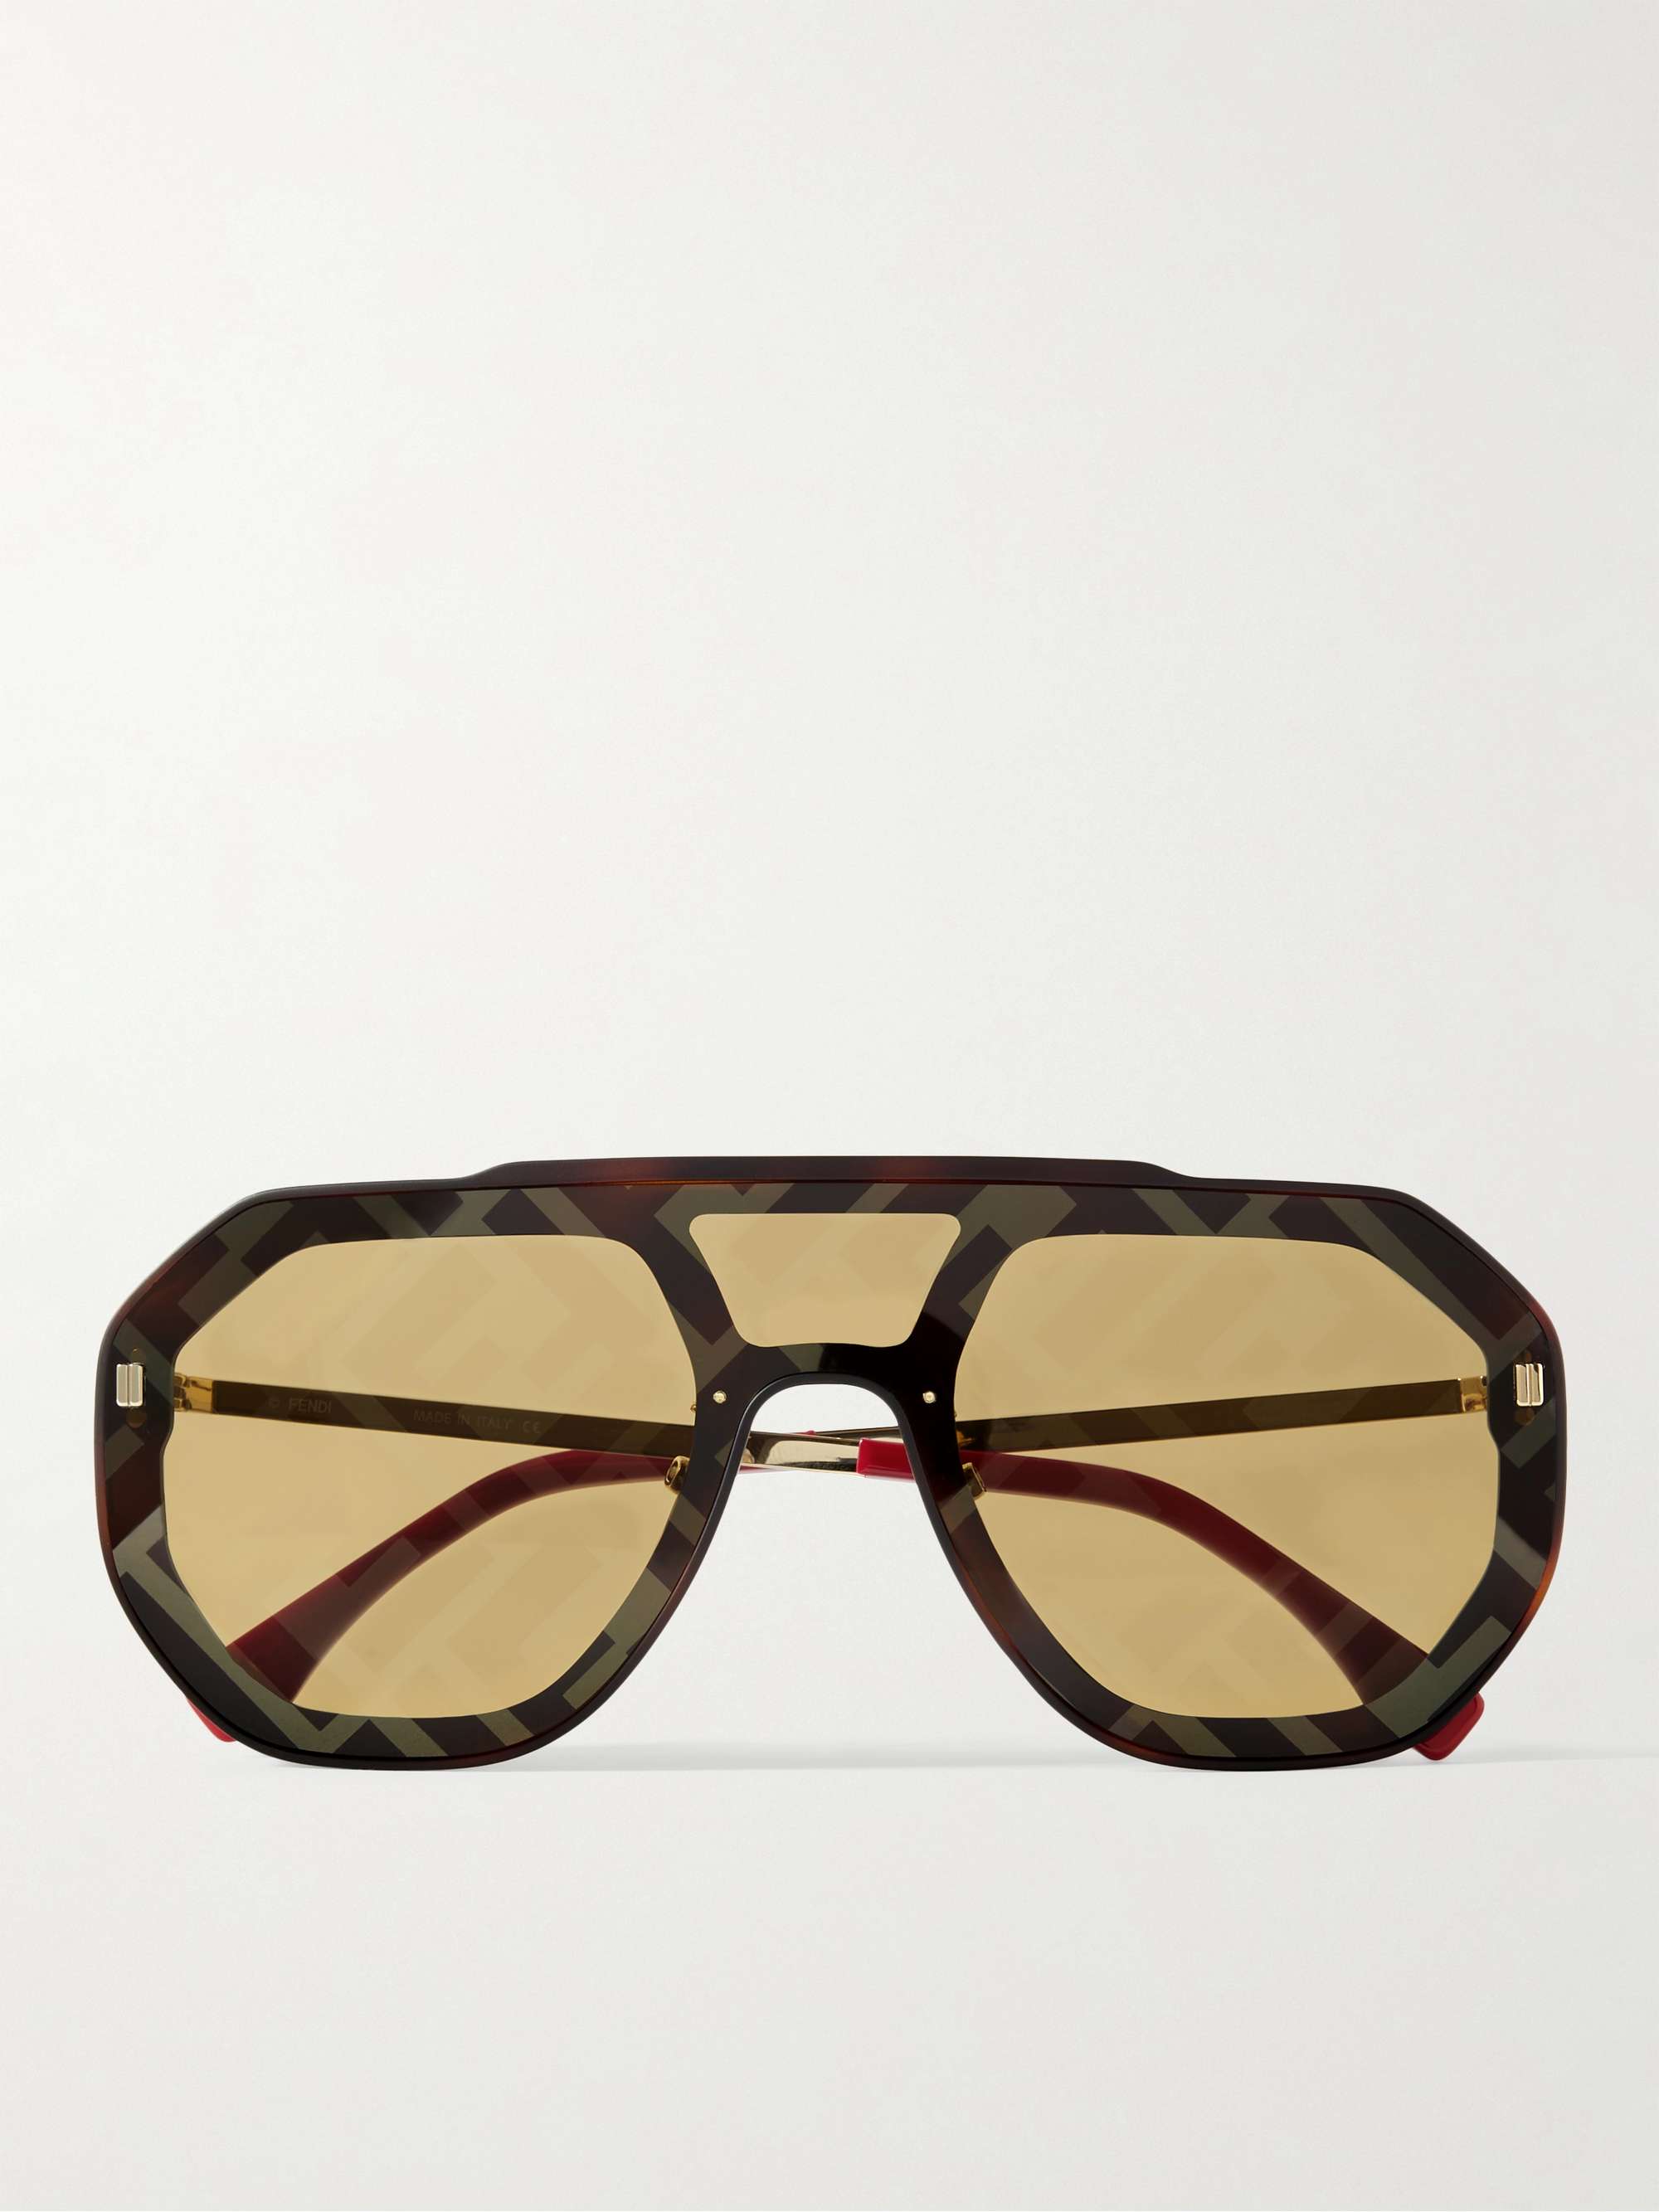 Men's Fendi Sunglasses & Eyeglasses